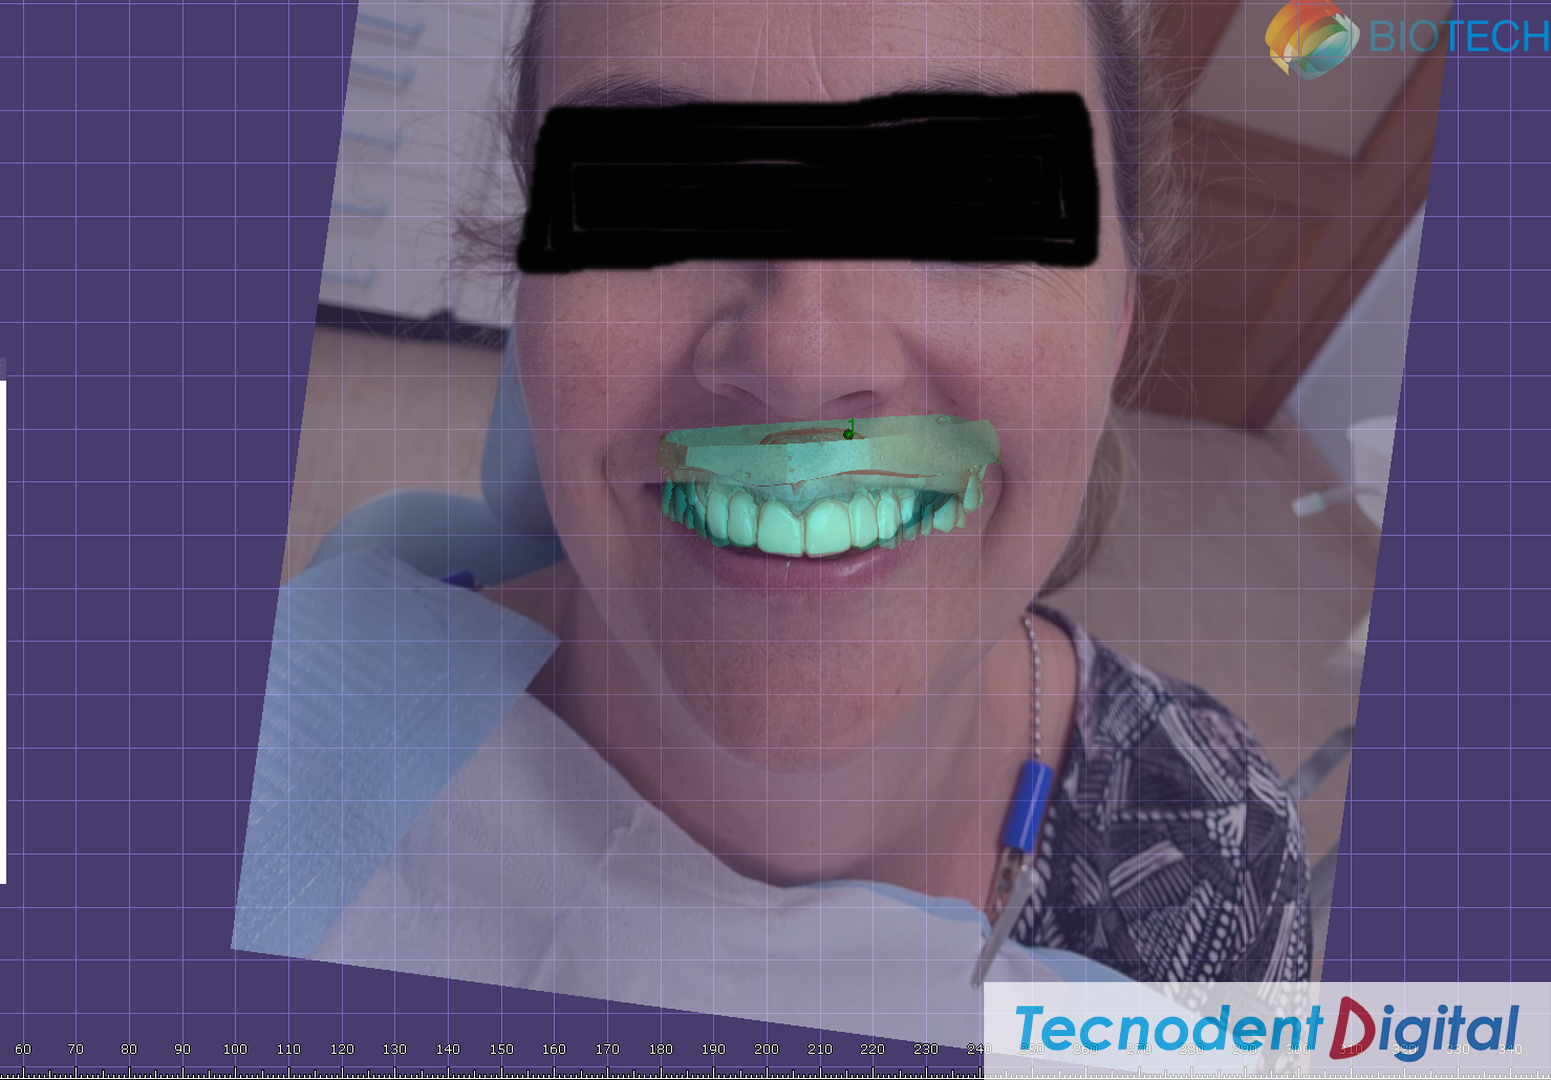 Centro-de-Fresado-Gandia-Laboratorio-Dental-odontologia-estetica